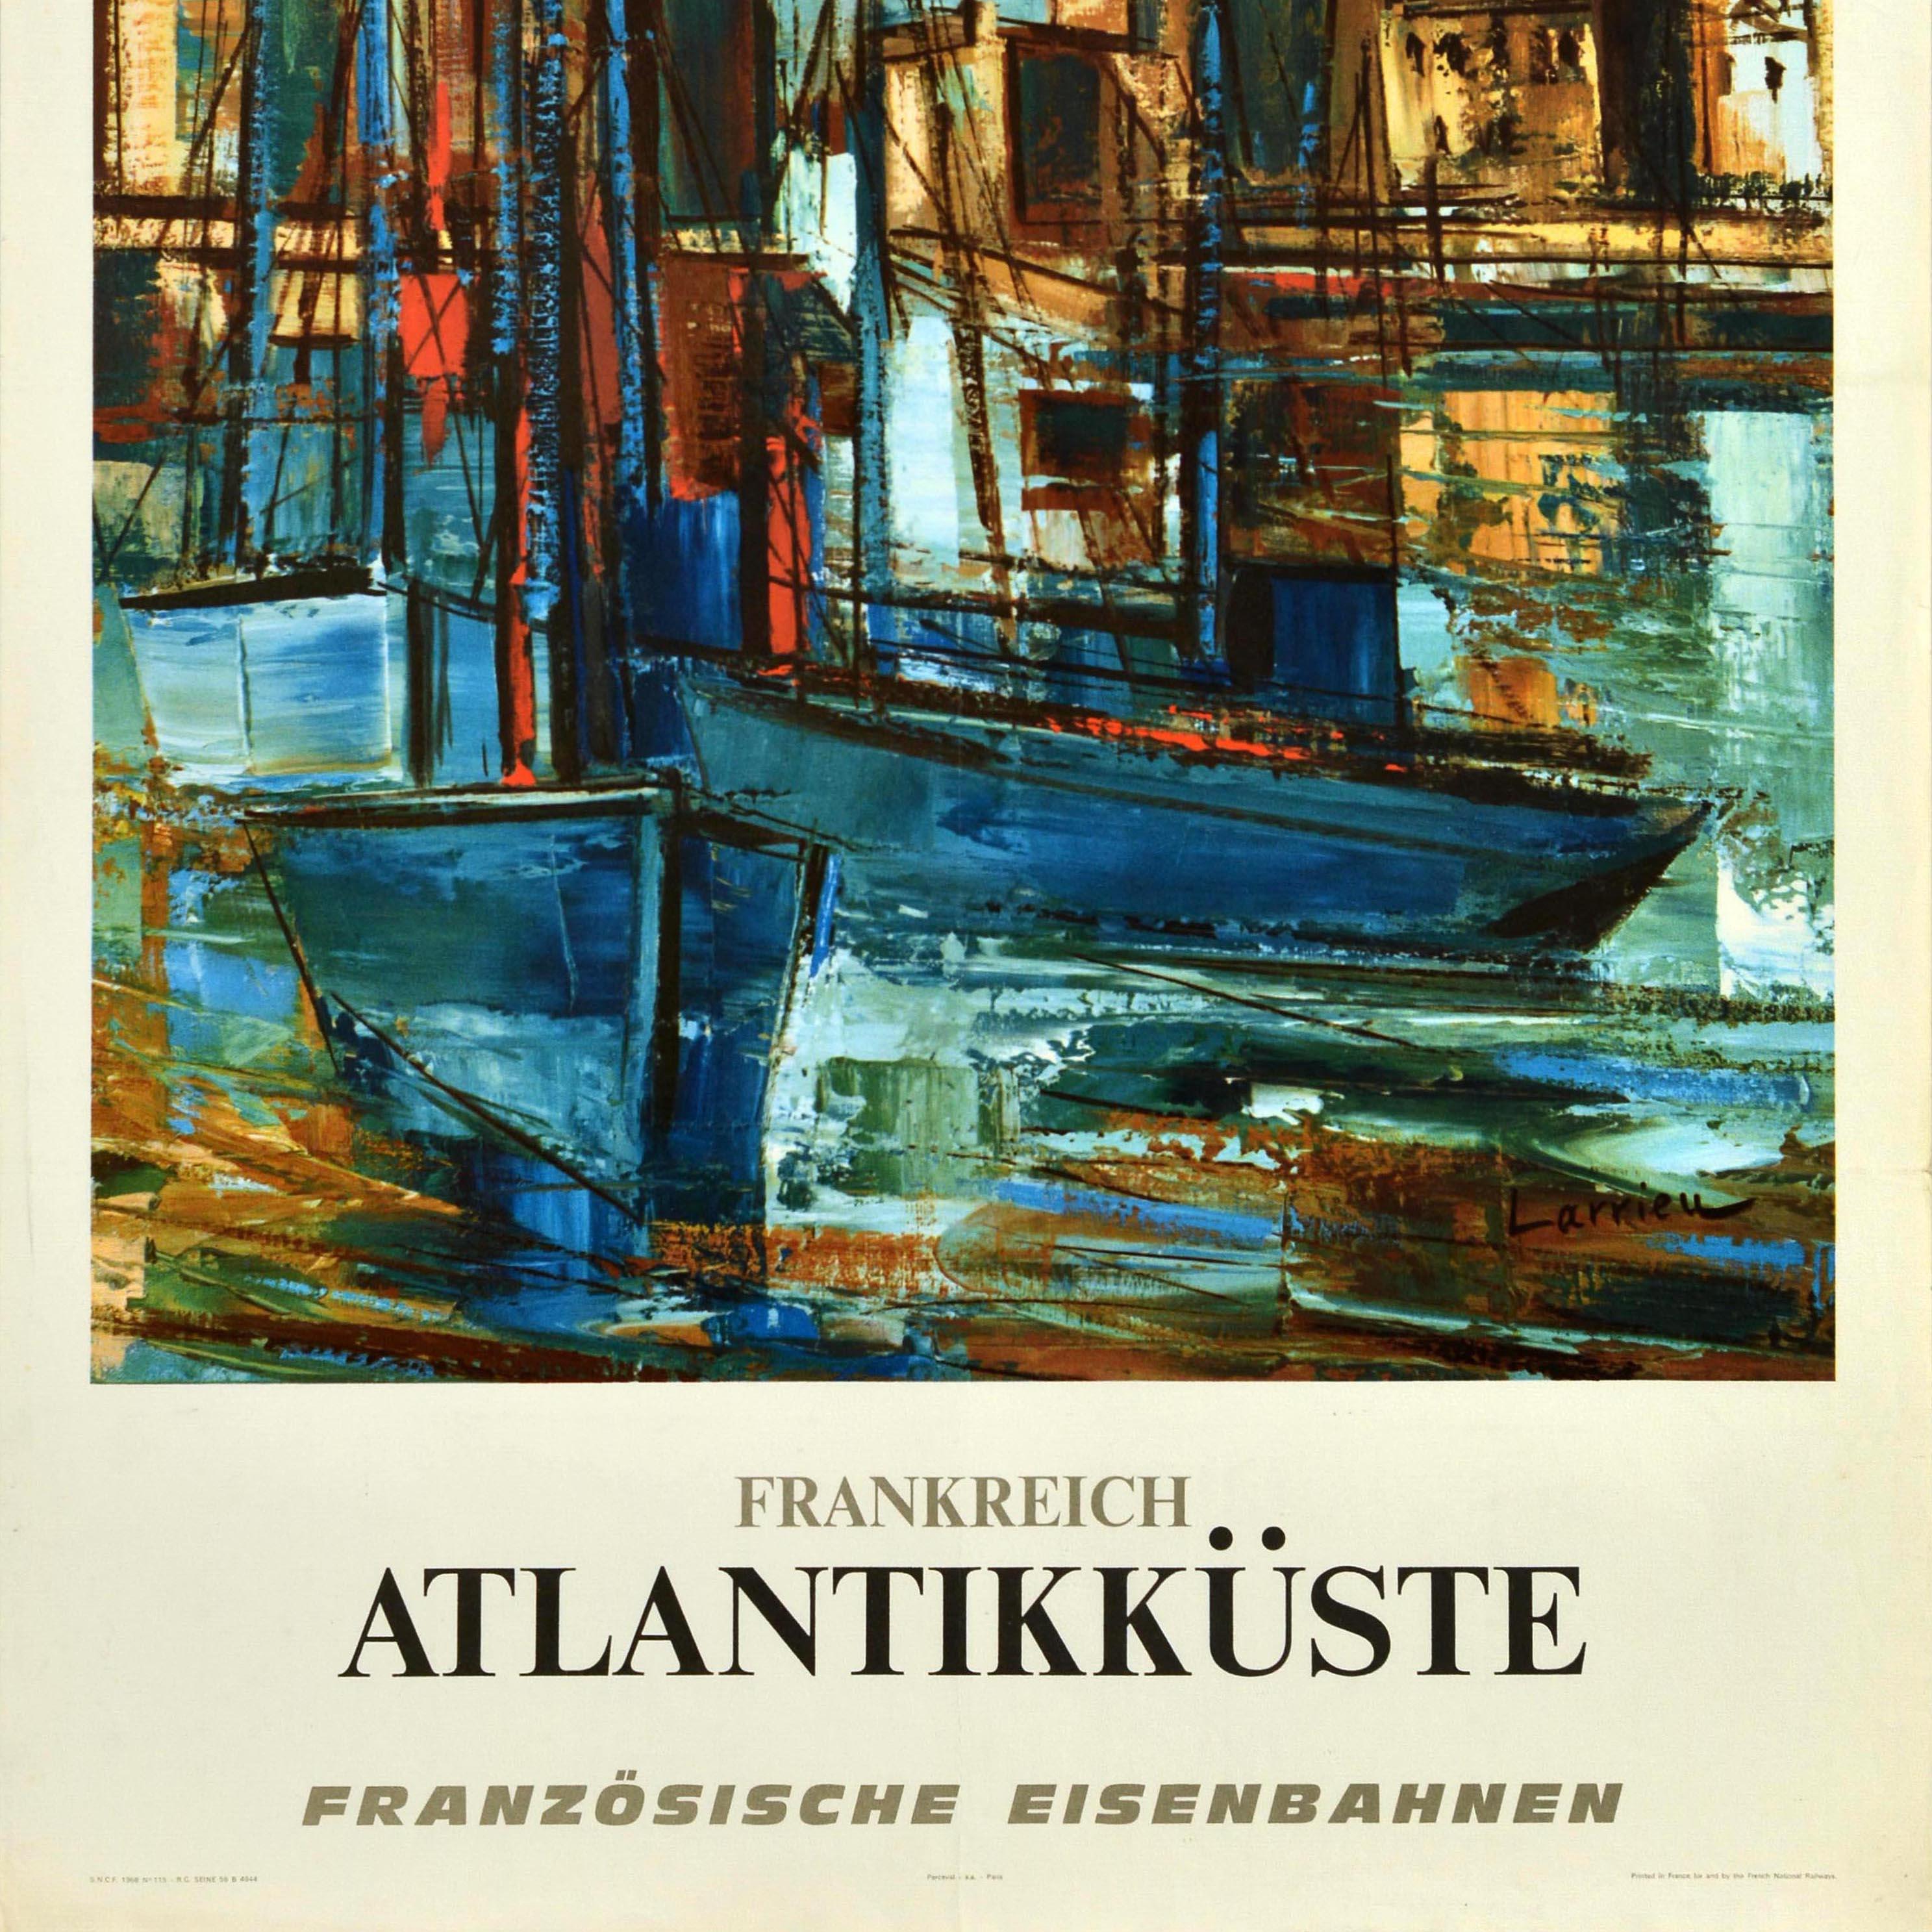 Originelles Reiseplakat der Französischen Eisenbahn, das auf Deutsch für Frankreich Atlantikküste wirbt. Das Plakat von Gaston Larrieu (1908-1983) zeigt eine Hafenszene mit blauen Holzsegelbooten auf dem Wasser und Gebäuden im Hintergrund.